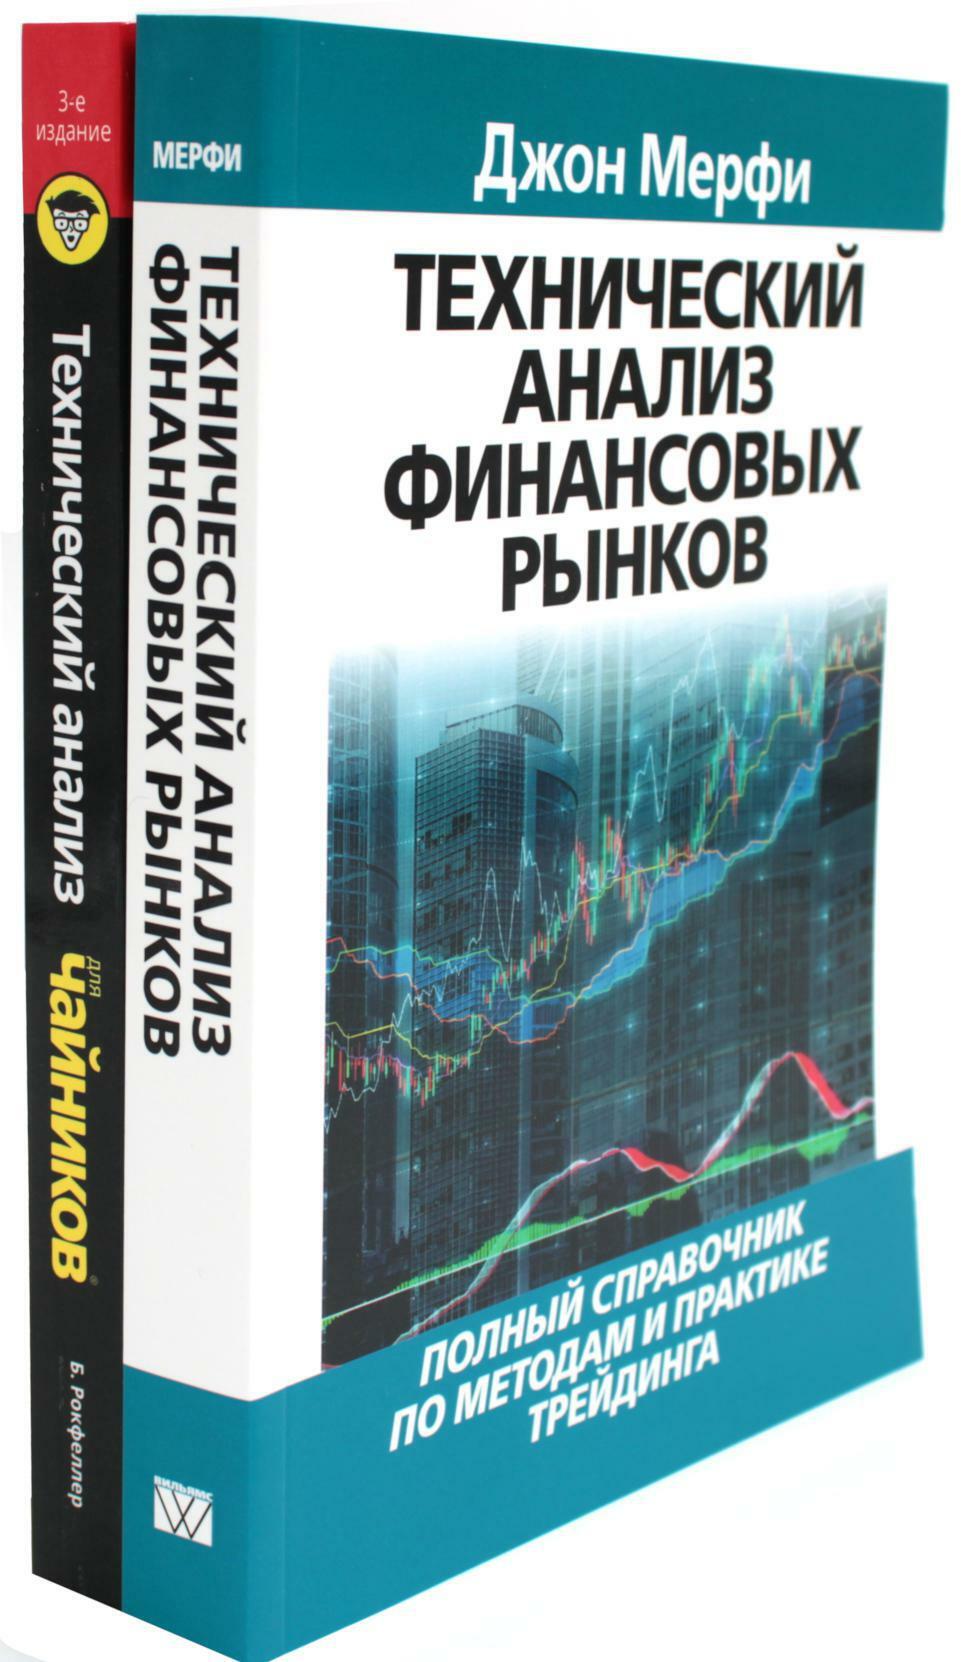 Технический анализ финансовых рынков + Для "чайников" Технический анализ (комплект из 2-х книг)